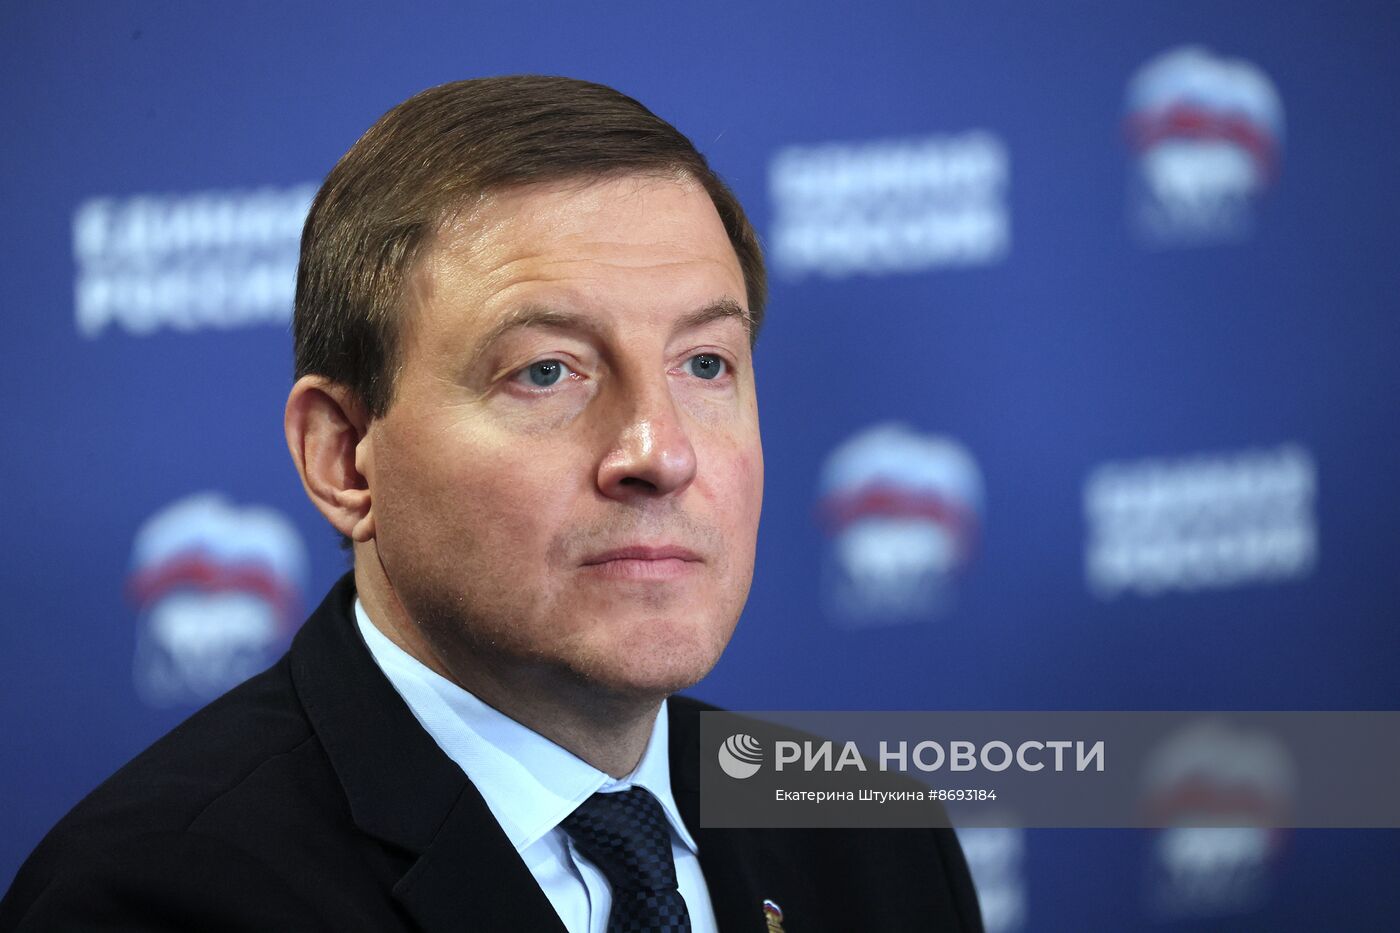 Рабочая поездка заместителя председателя Совбеза РФ Д. Медведева в Северо-Западный федеральный округ